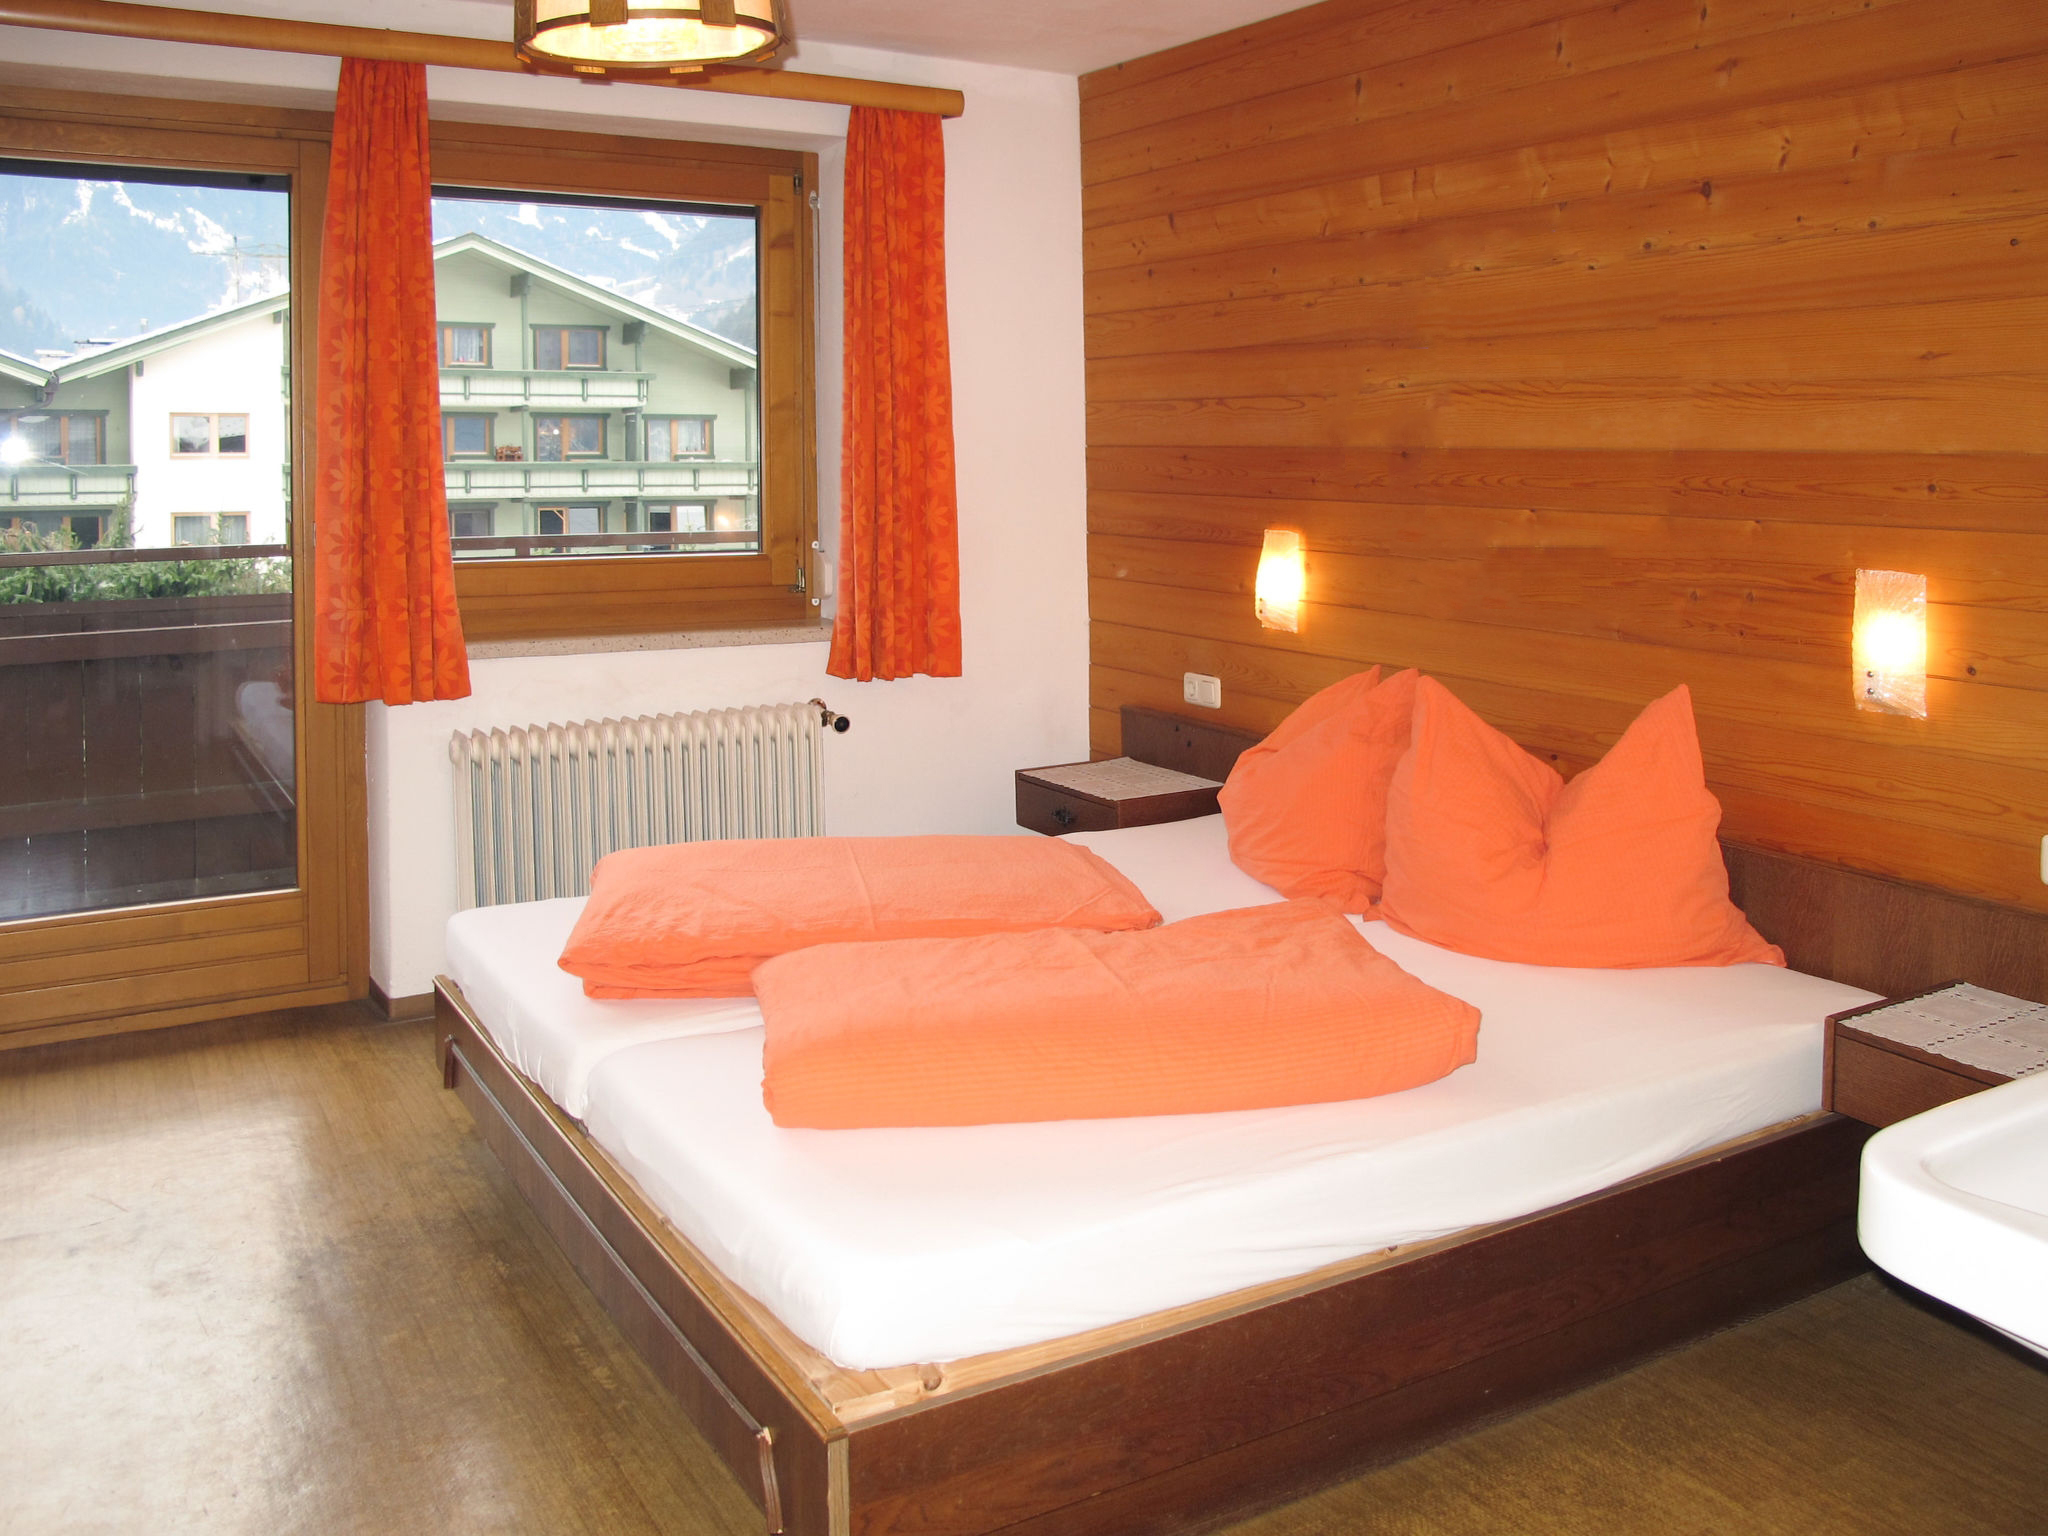 Ferienhaus Mariandl: Schlafzimmer mit Doppelbett